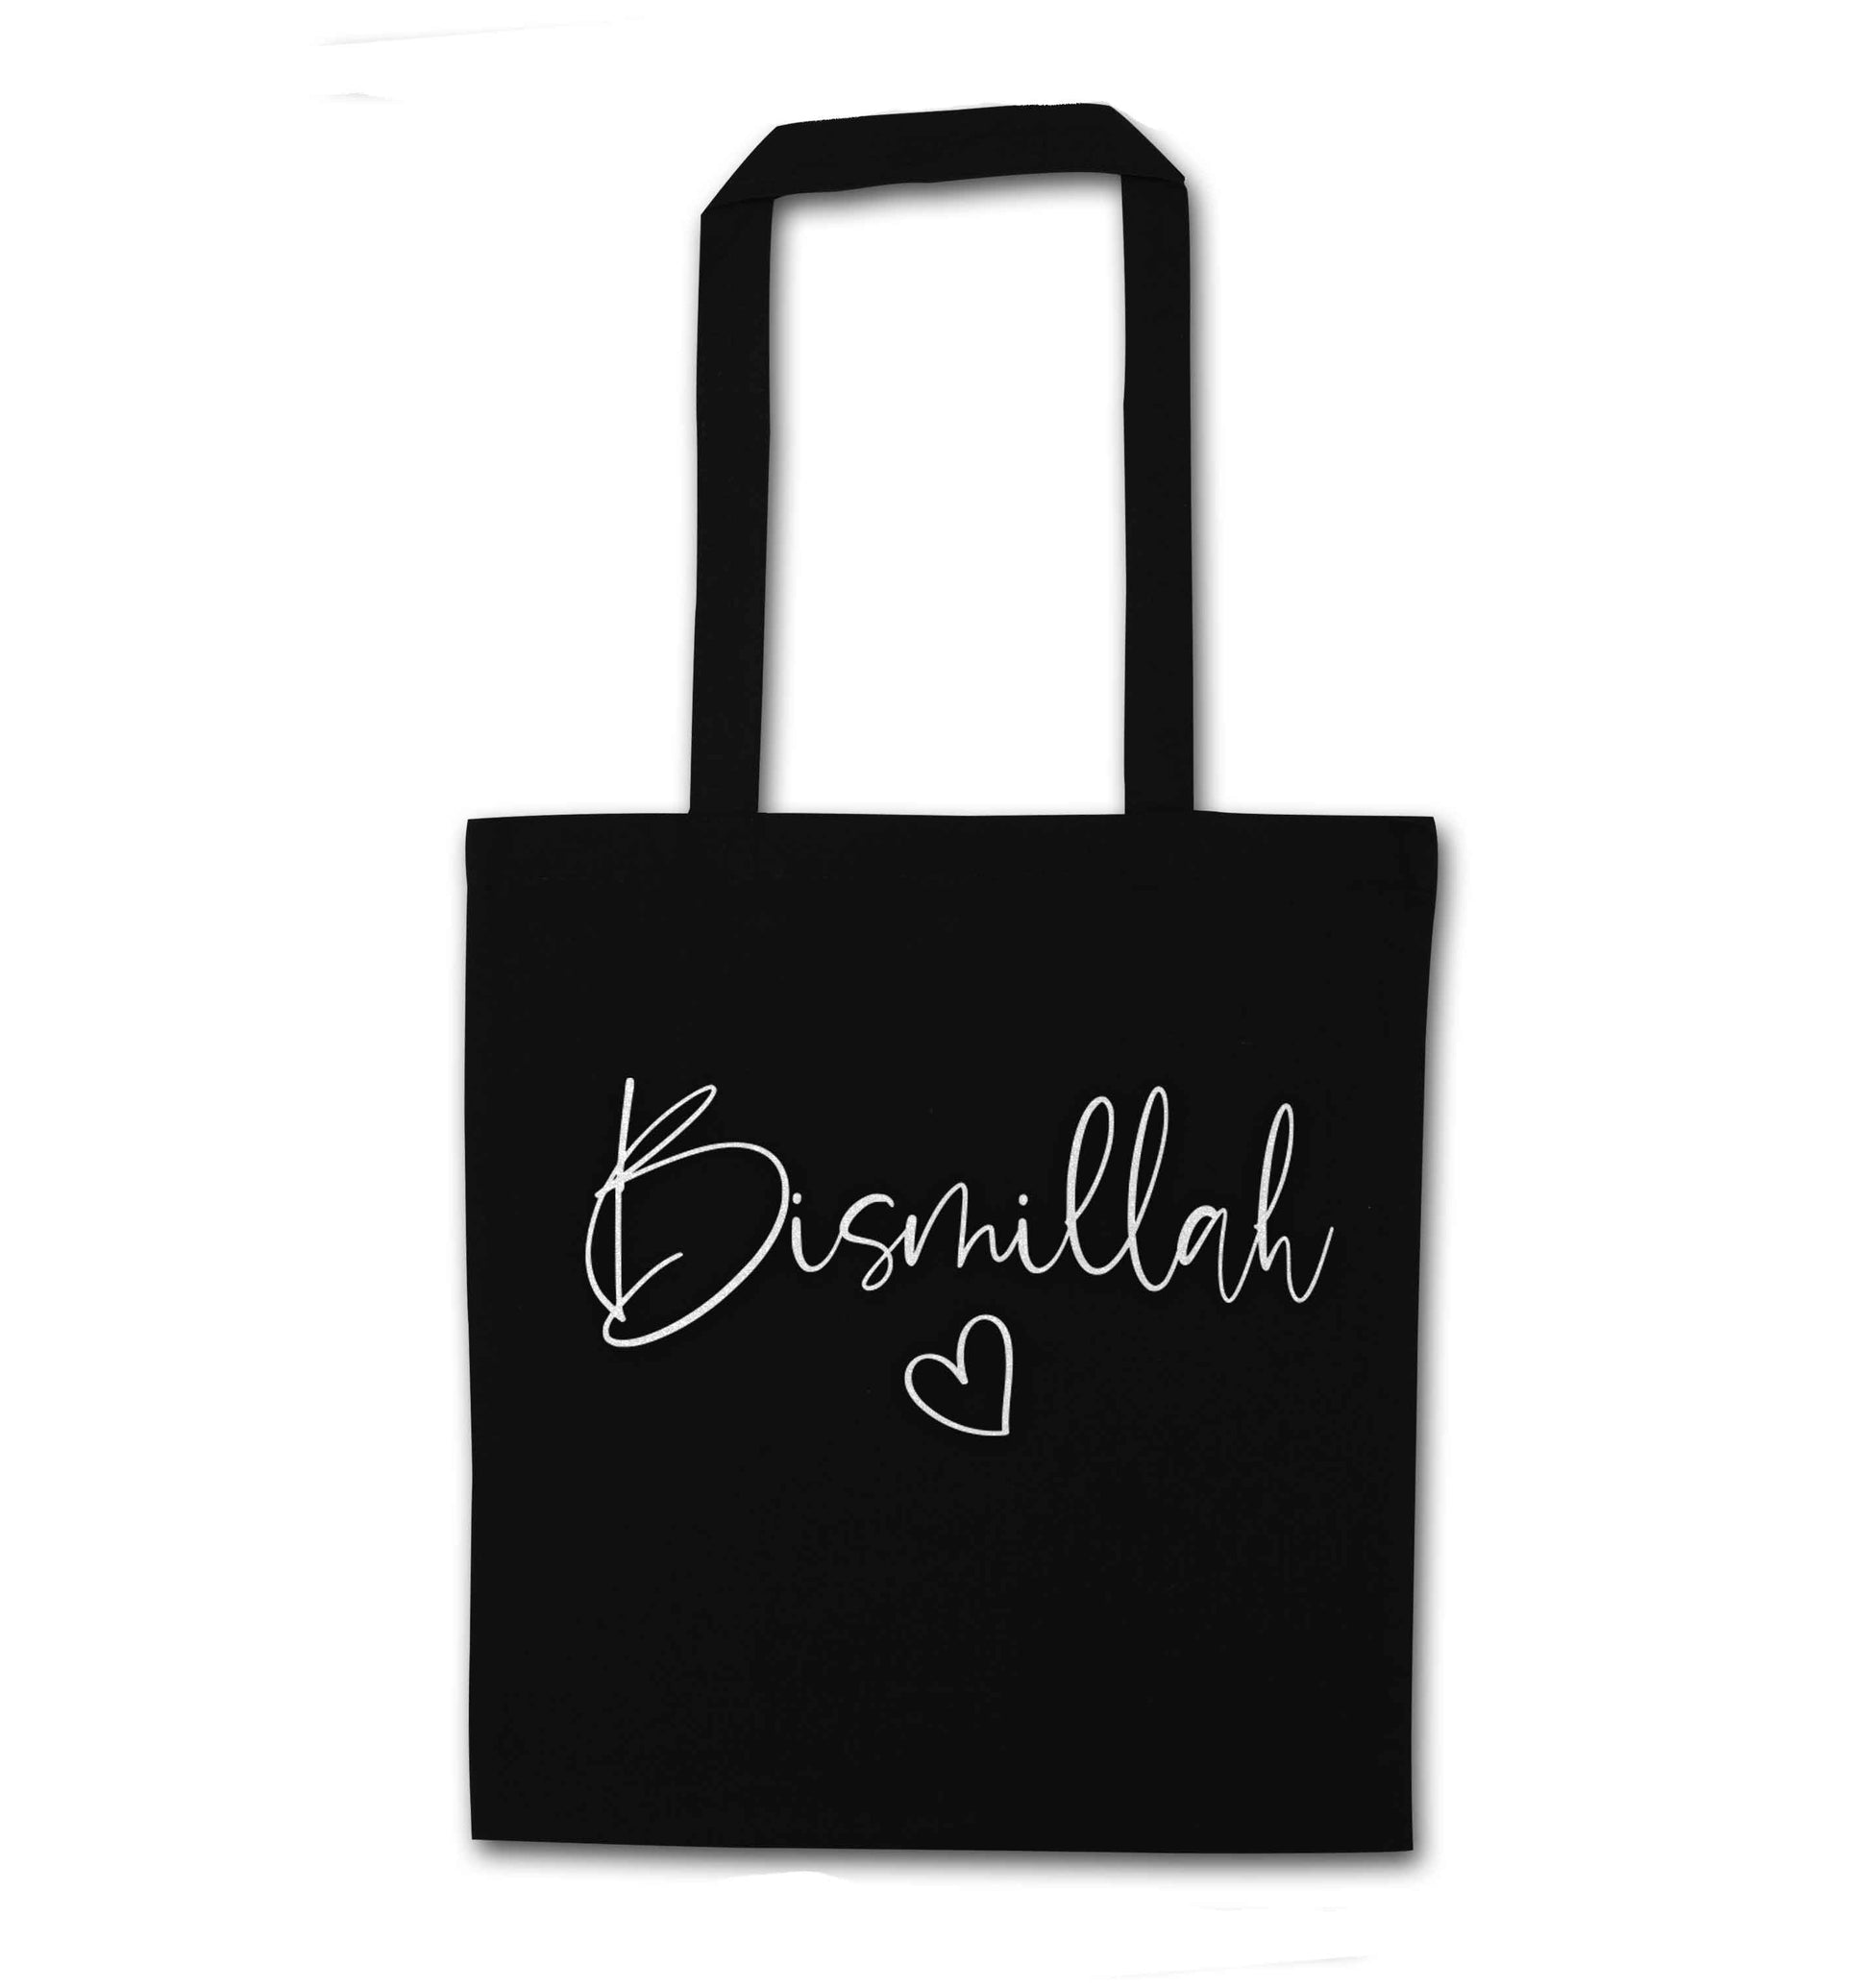 Bismillah black tote bag